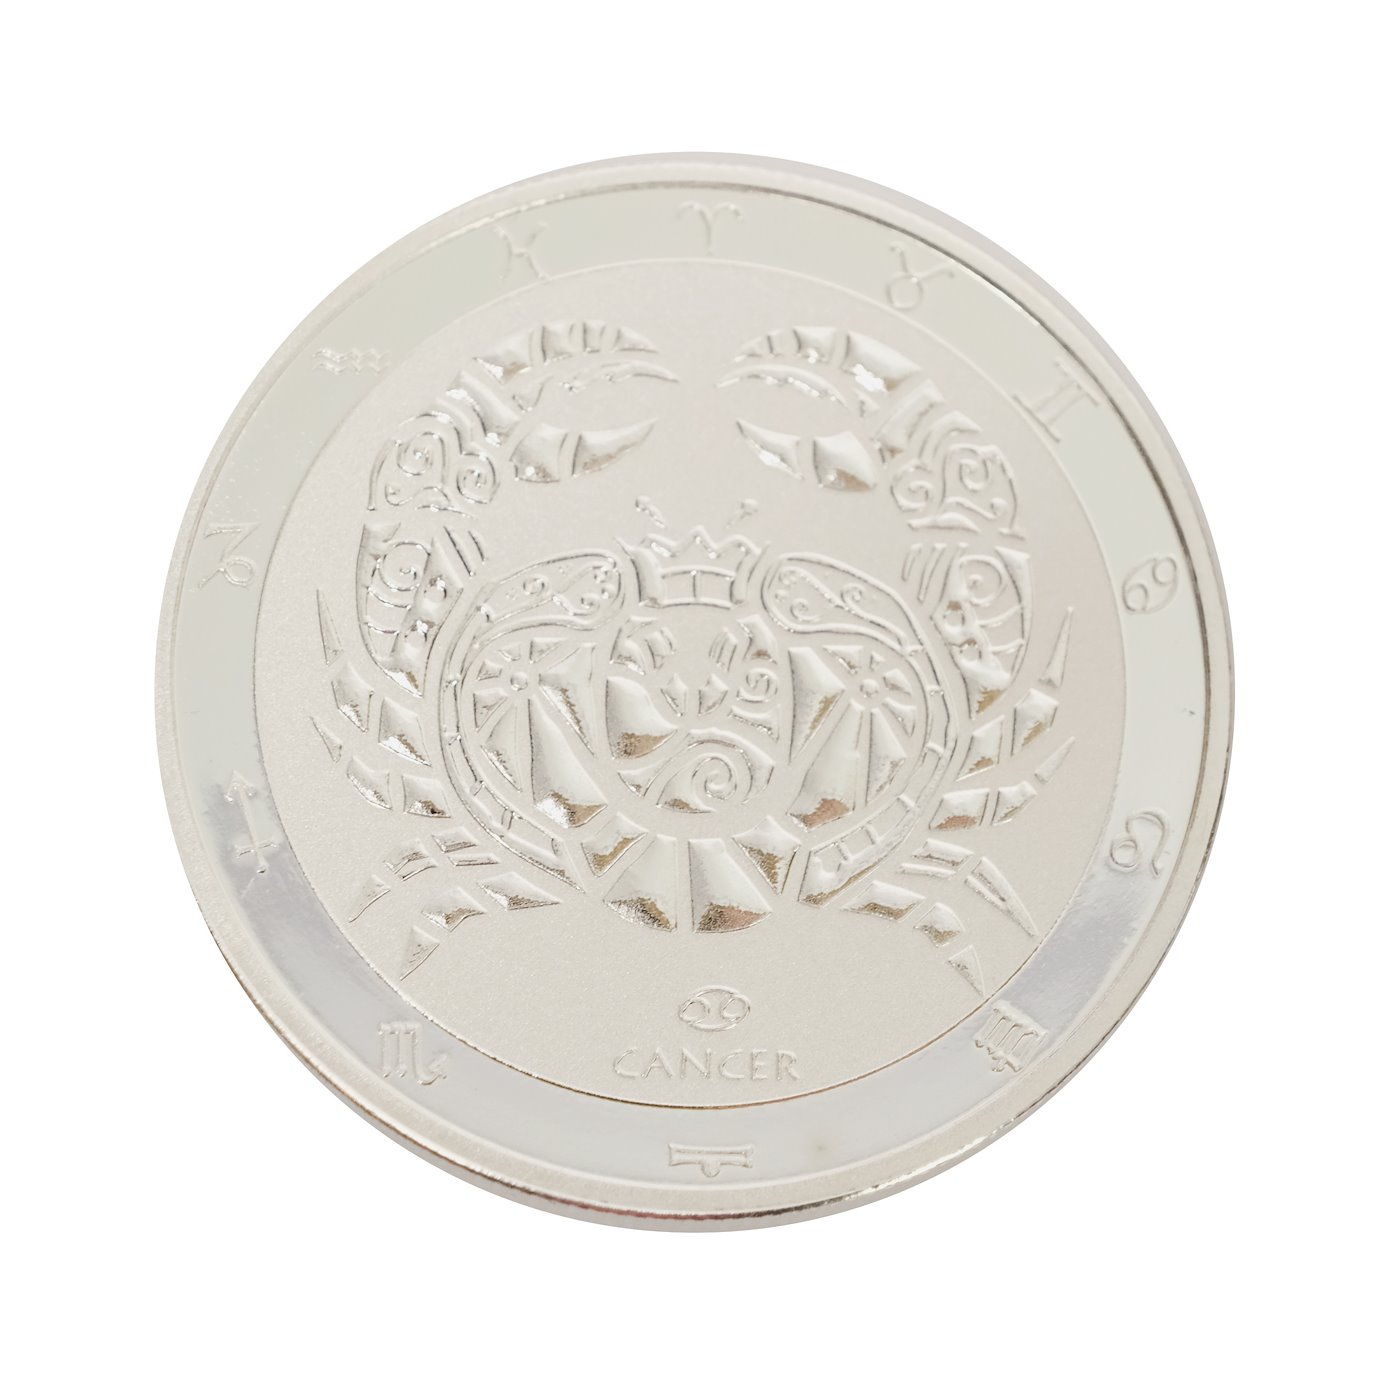 .. - Znamení zvěrokruhu stříbrná mince Tokelau 2022 znamení RAK, stříbro 999/1000, hrubá hmotnost 31,1 g